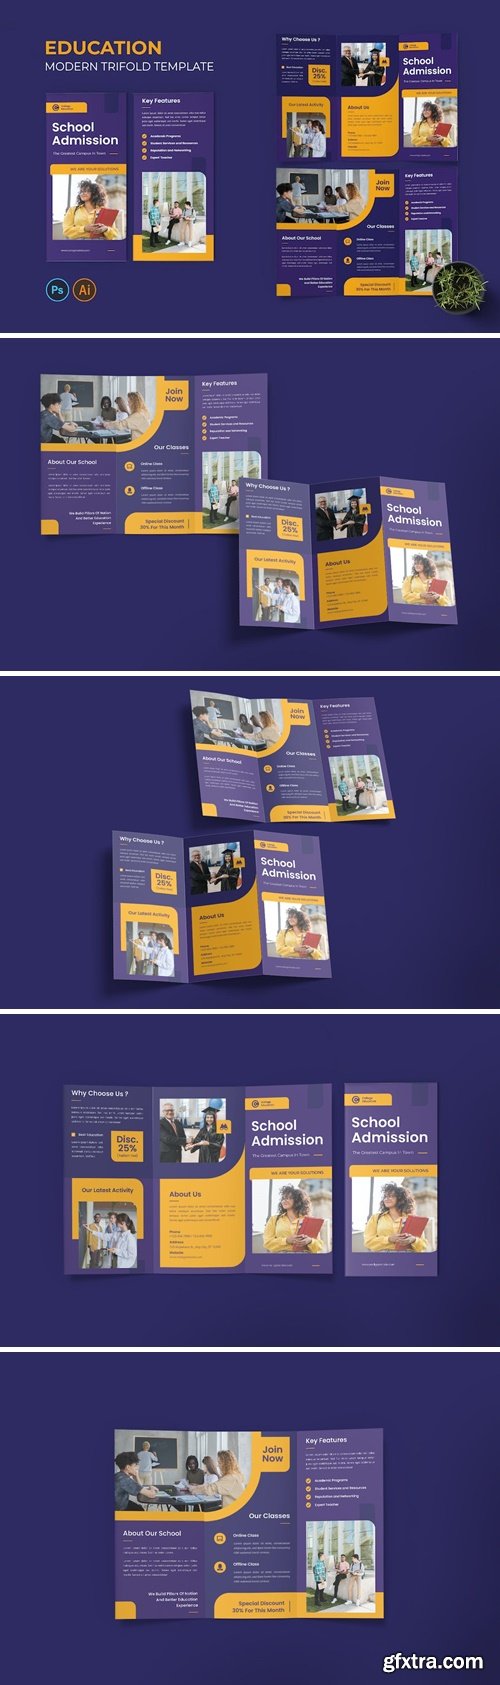 College Education Trifold Brochure MBL9V6K